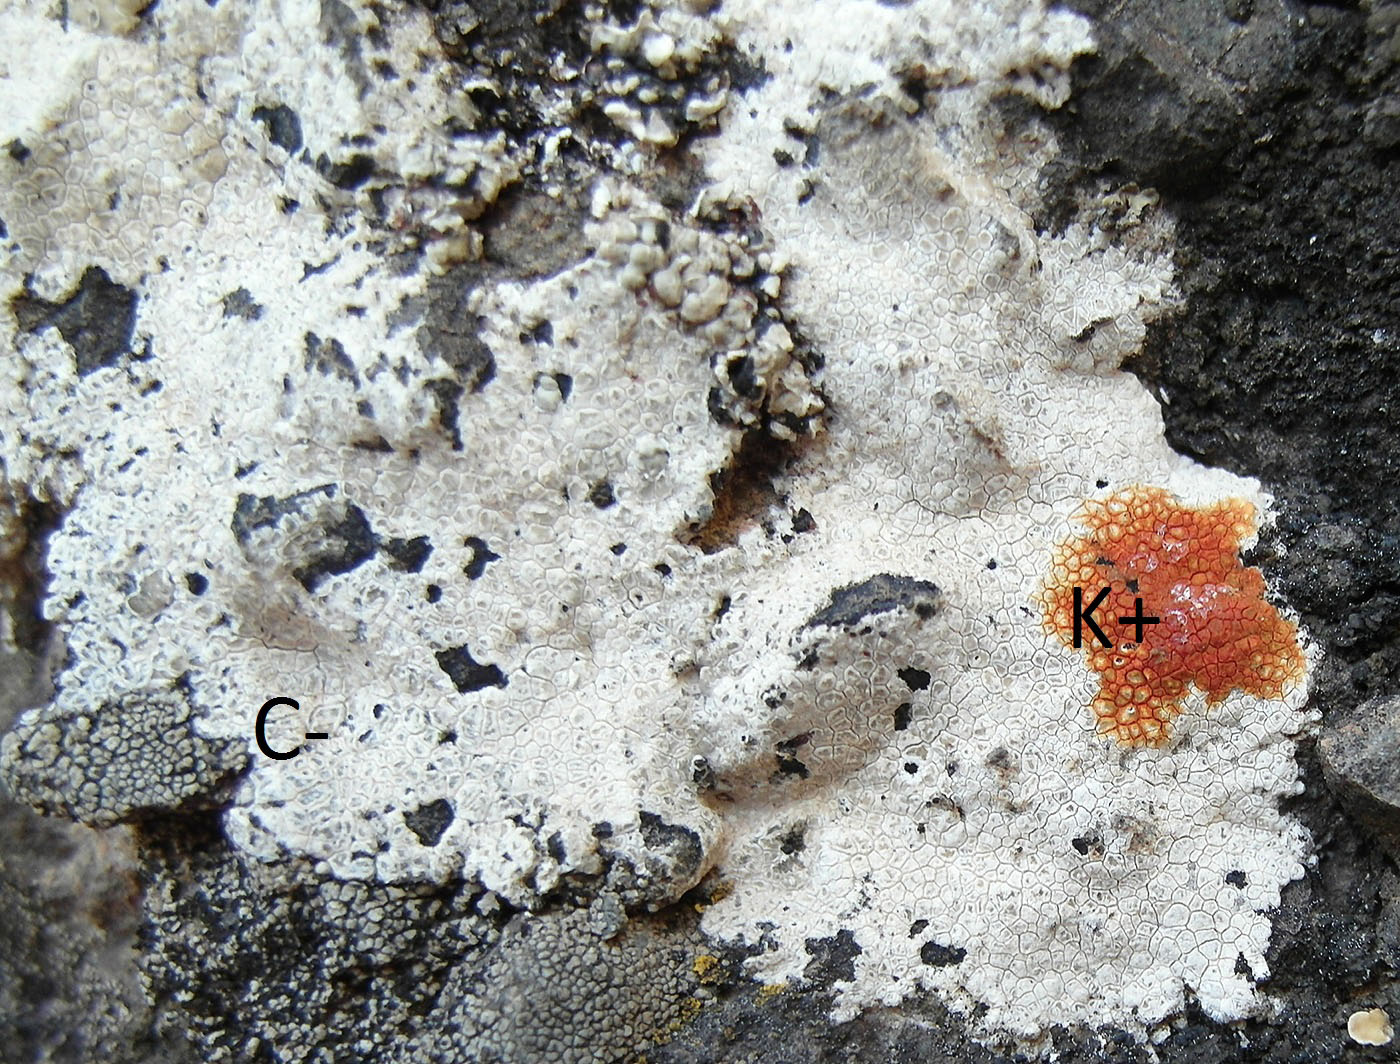 Image of genus Aspicilia specimen.